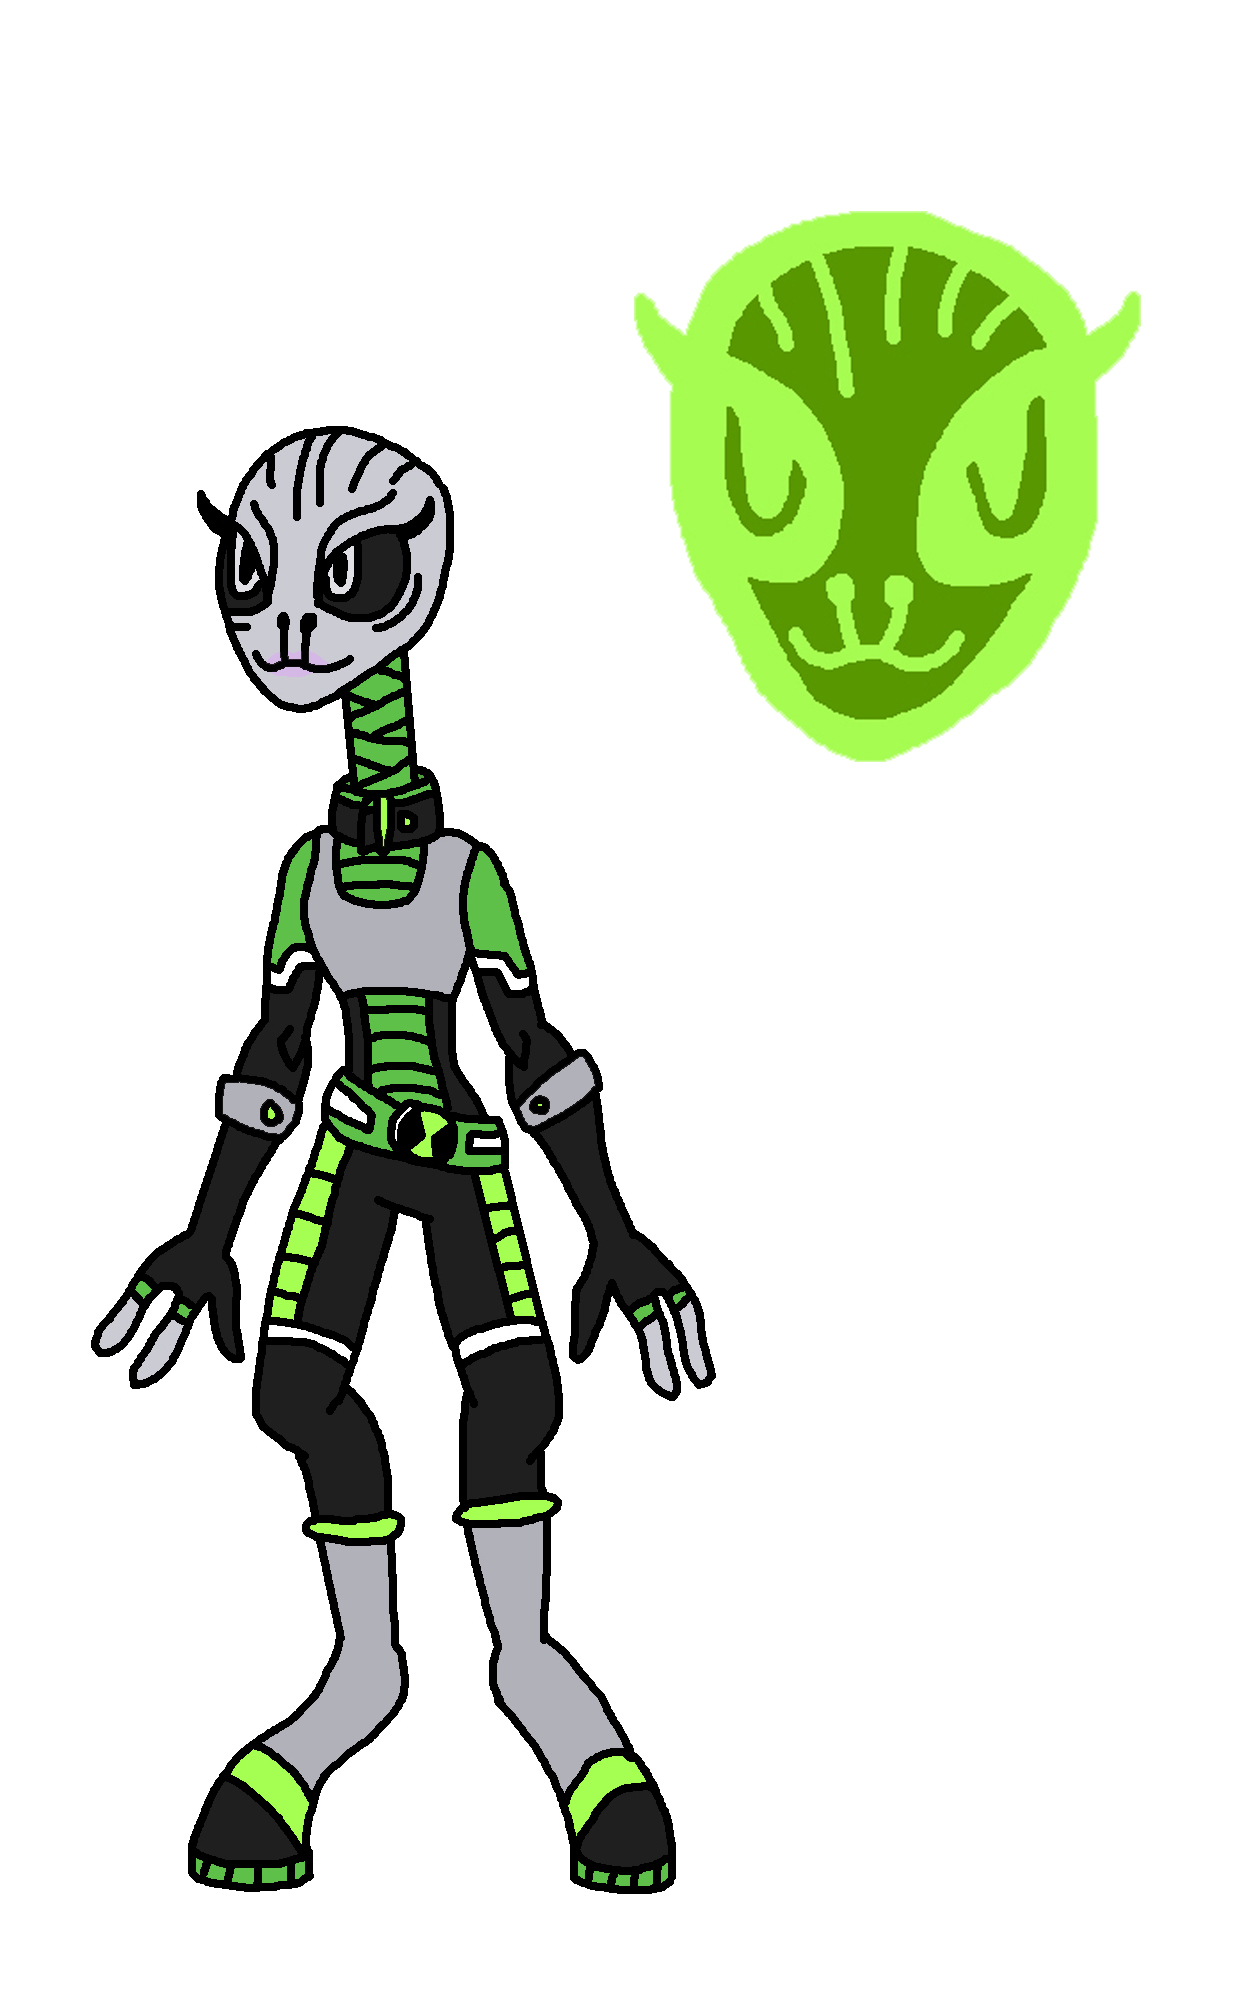 Ben 10: Alien Force Extraterrestrial Life DeviantArt - Wetsuit